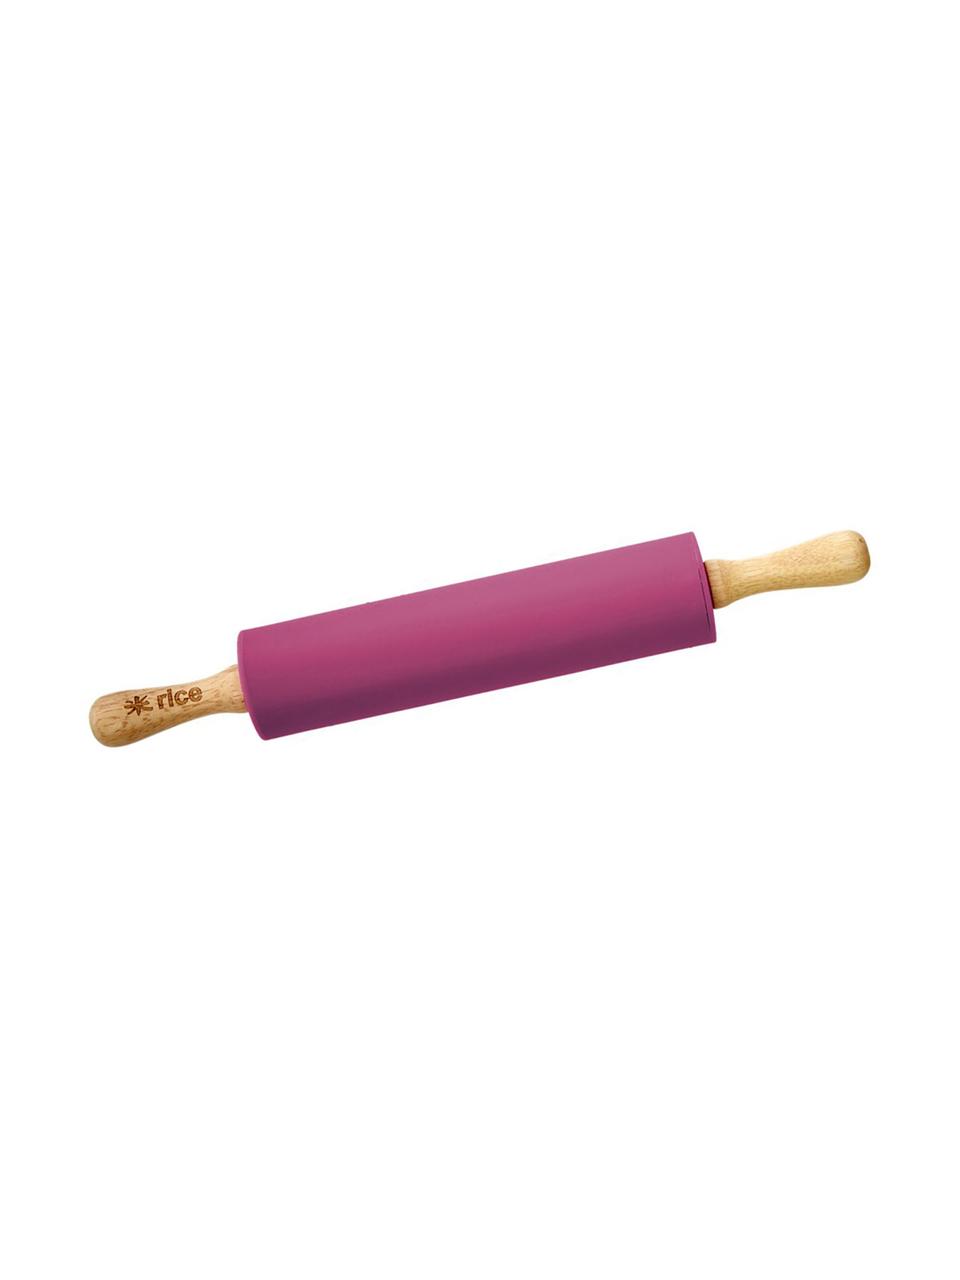 Nudelholz Pin, Griff: Buchenholz, Pink, Buchenholz, L 43 cm